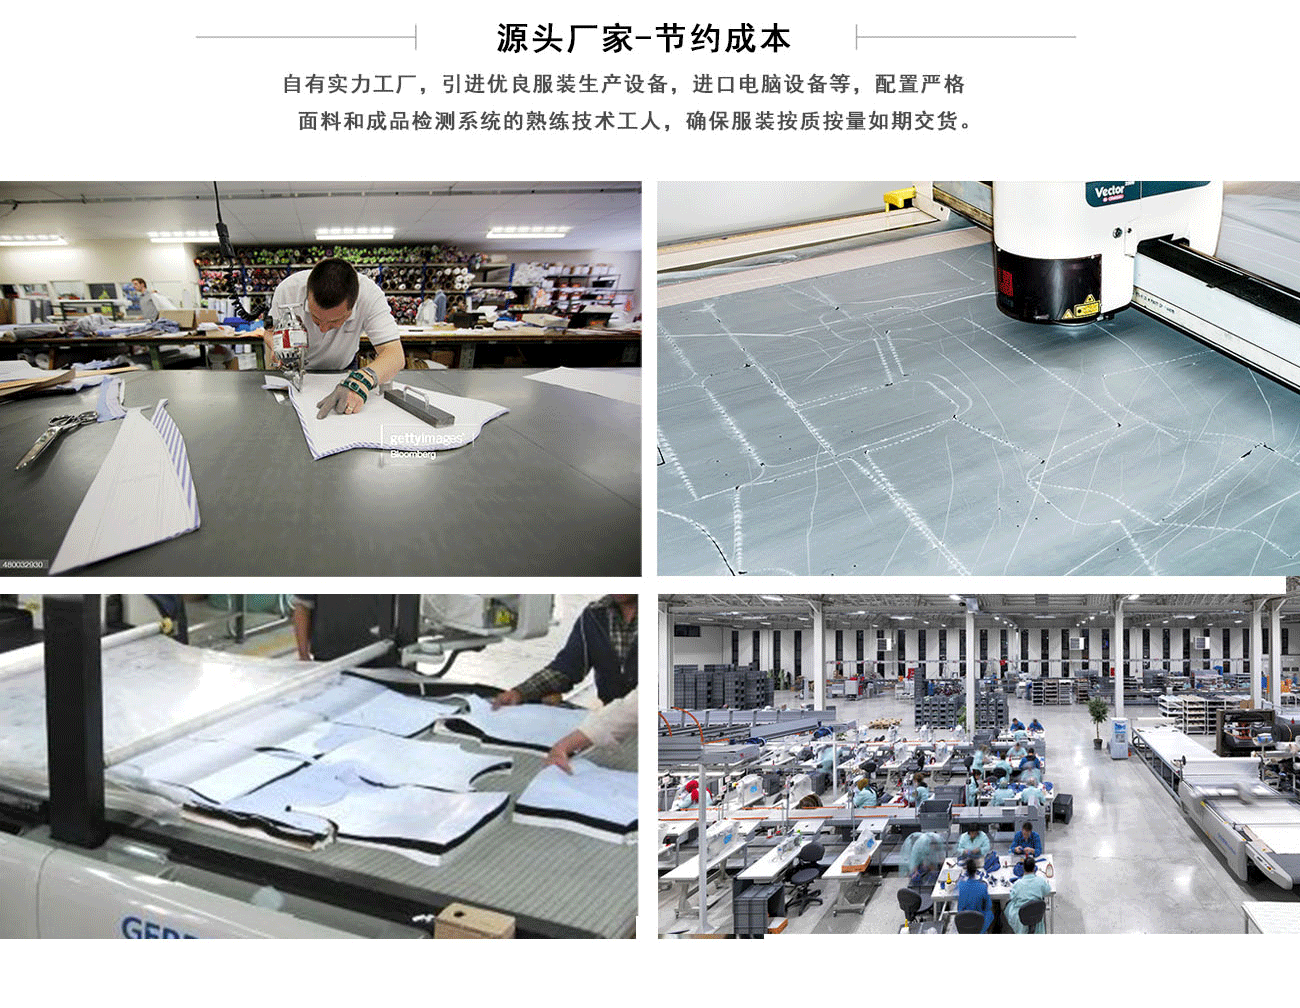 焊工工作服裤子厂家工厂实景、一线工人作业图以及我们精良的生产设备和规模等